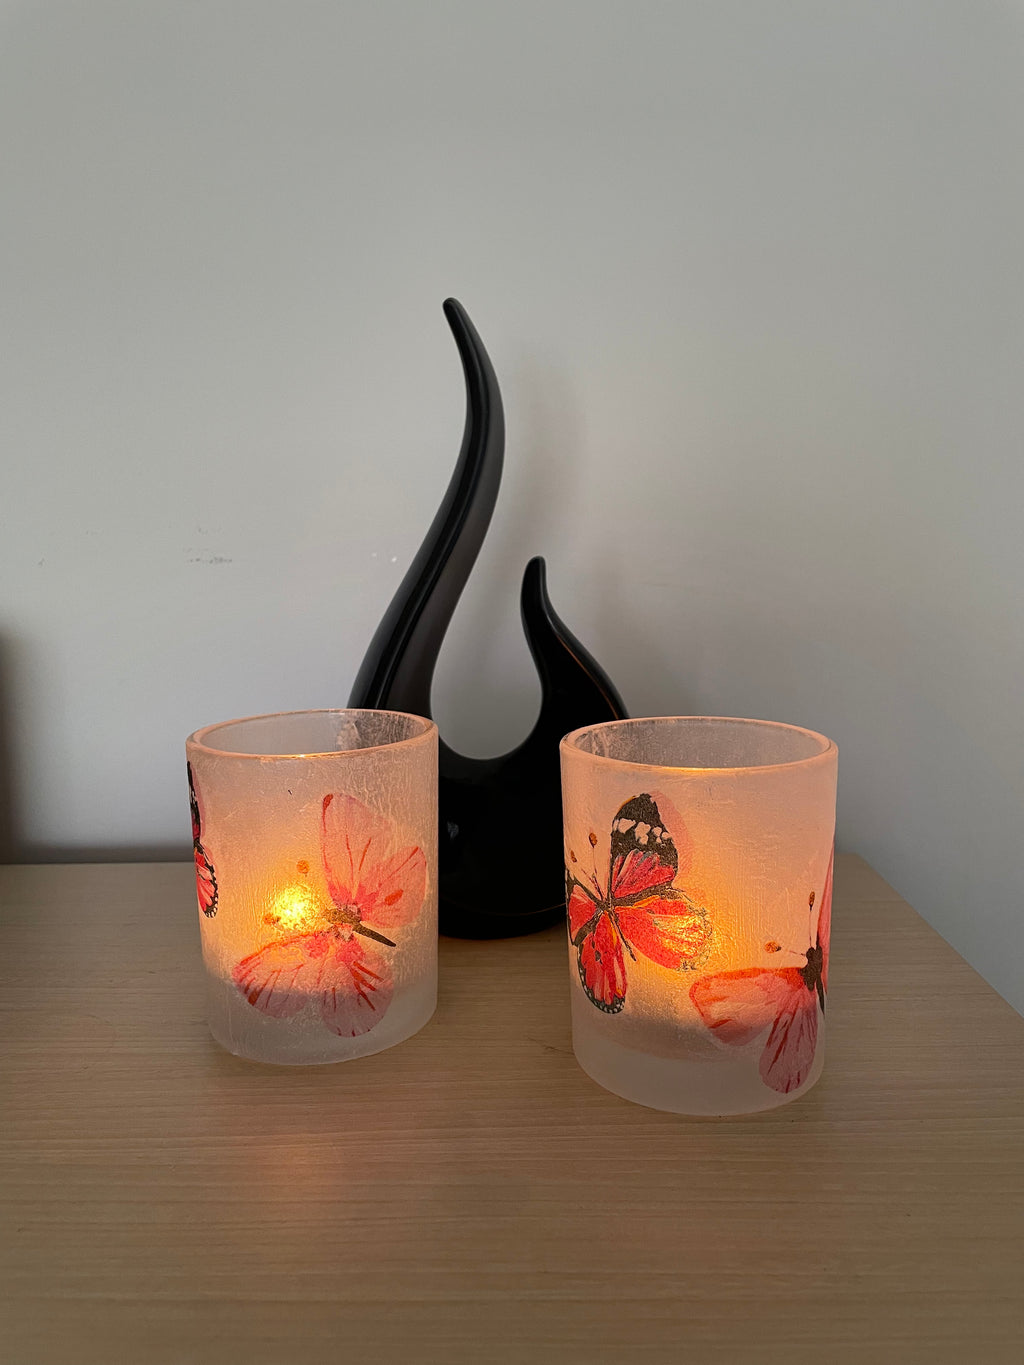 2 Handmade Decoupage Tea Light Holders with Homemade Tea Lights - Pink Butterflies